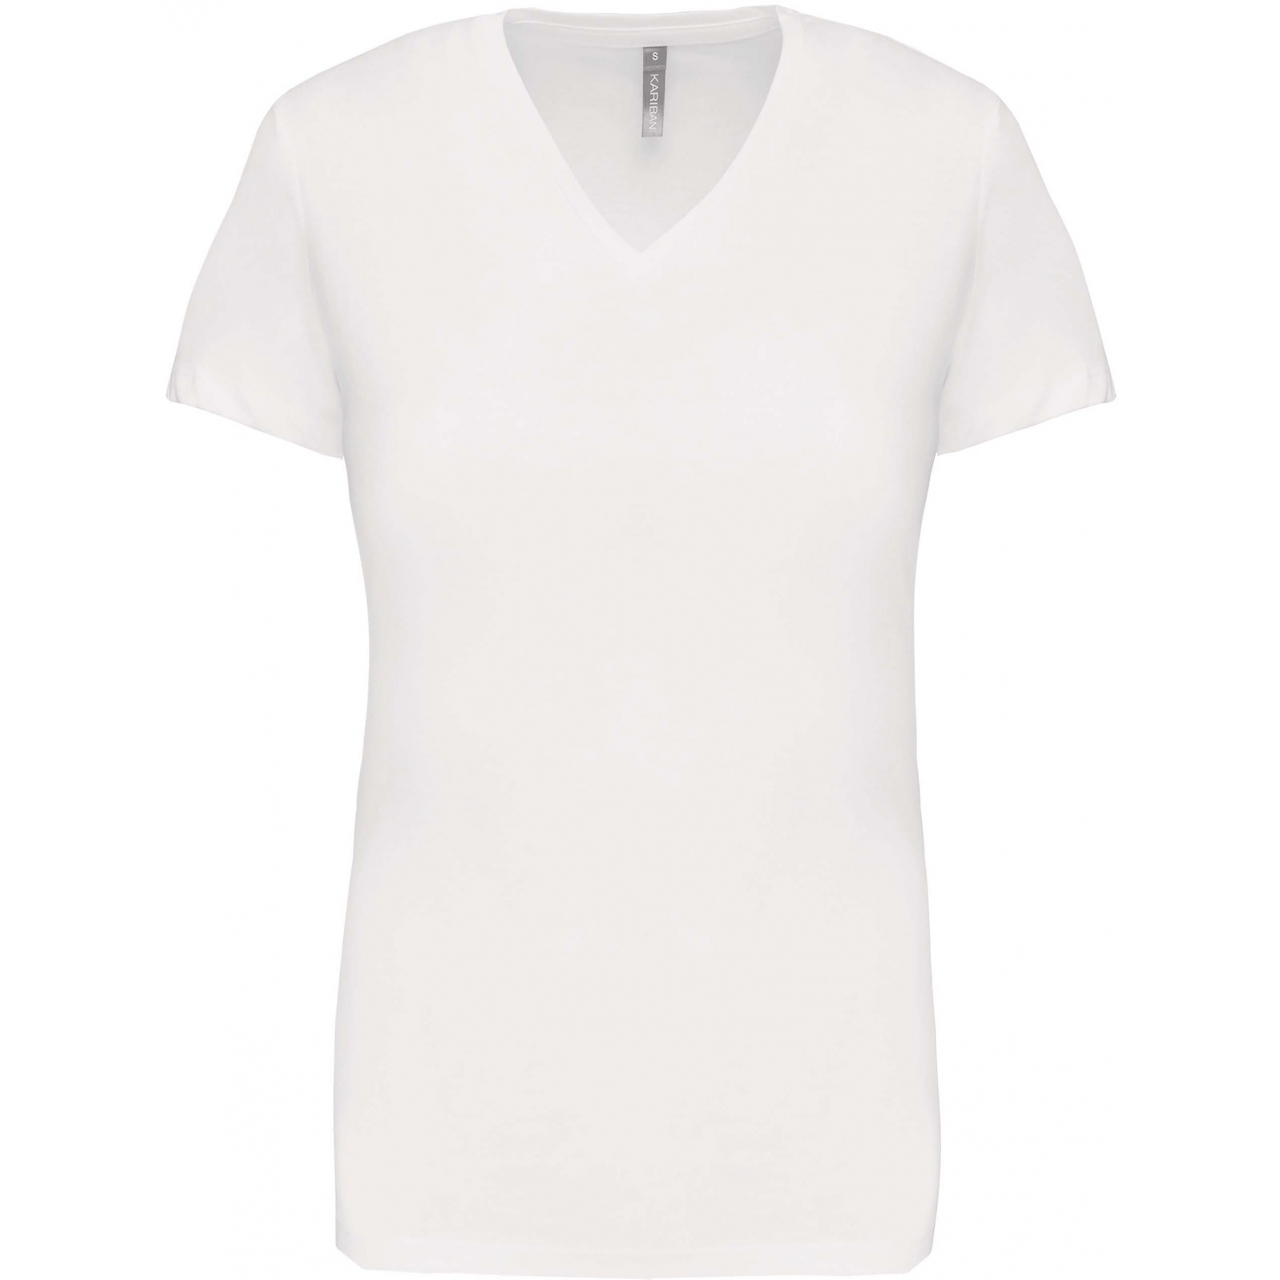 Dámské tričko Kariban V-neck s krátkým rukávem - bílé, S